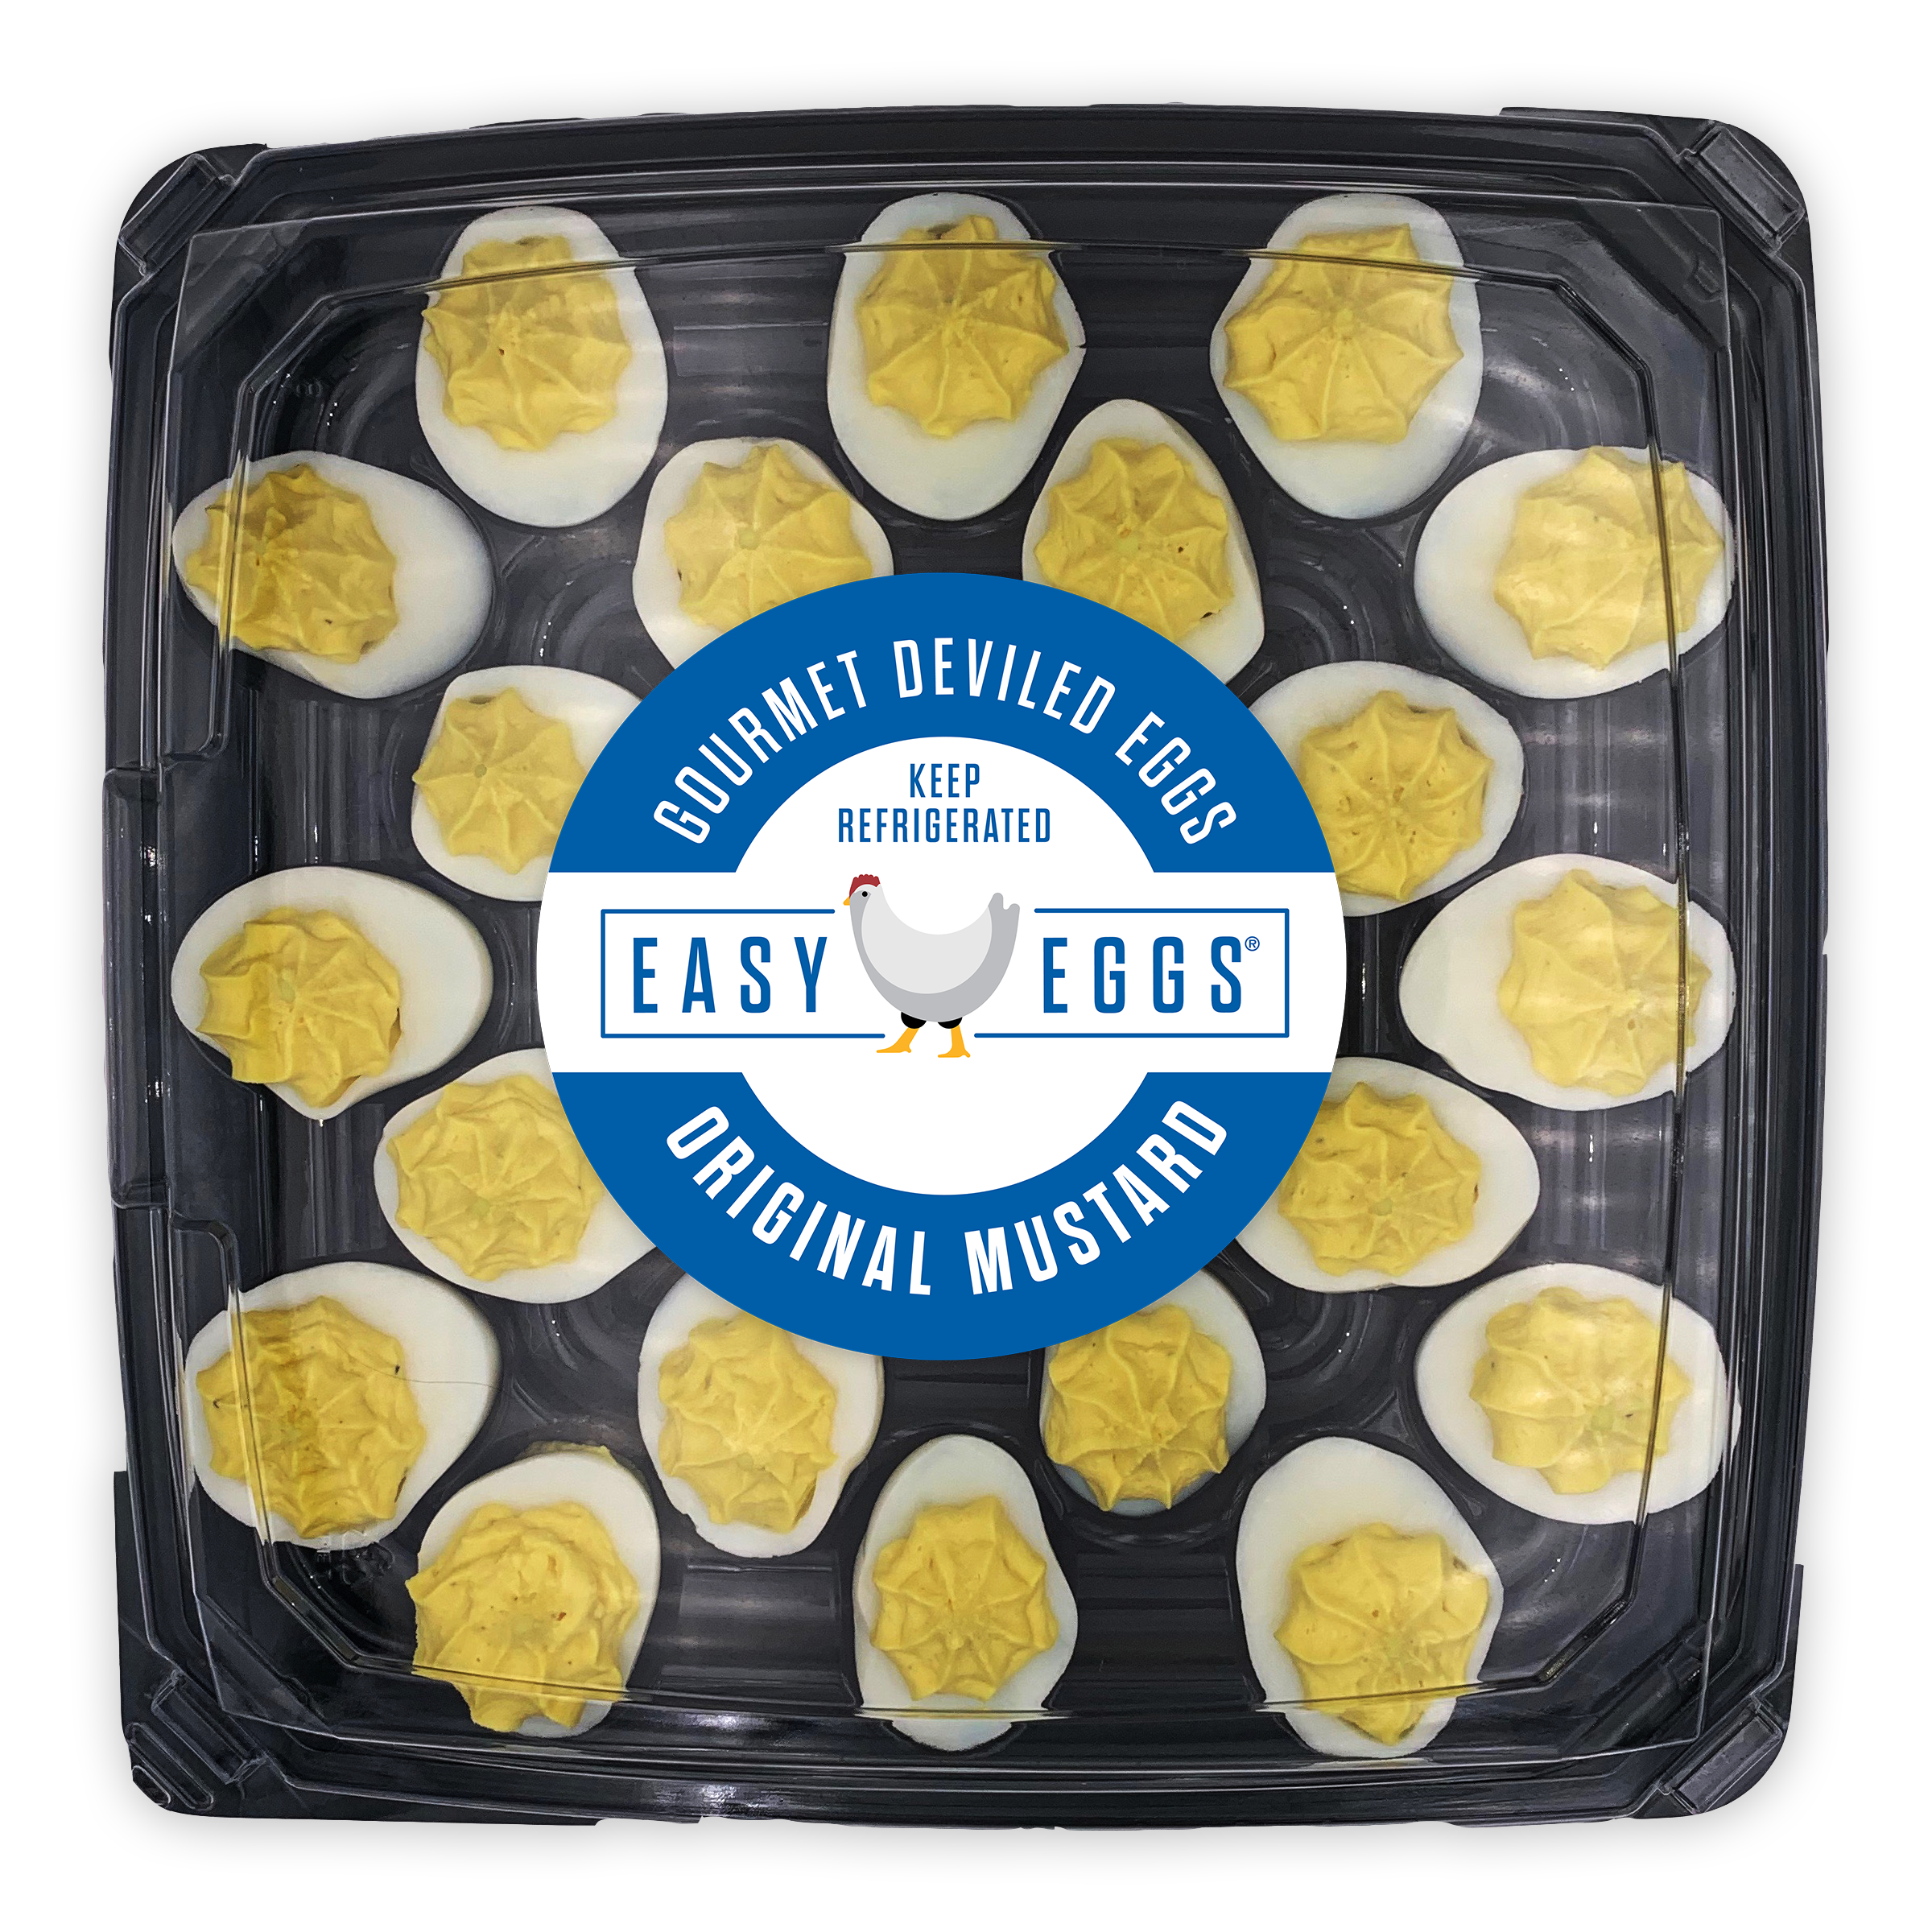 Easy Eggs® Original Mustard Flavor Deviled Egg Kit, 4/24 Count Trays